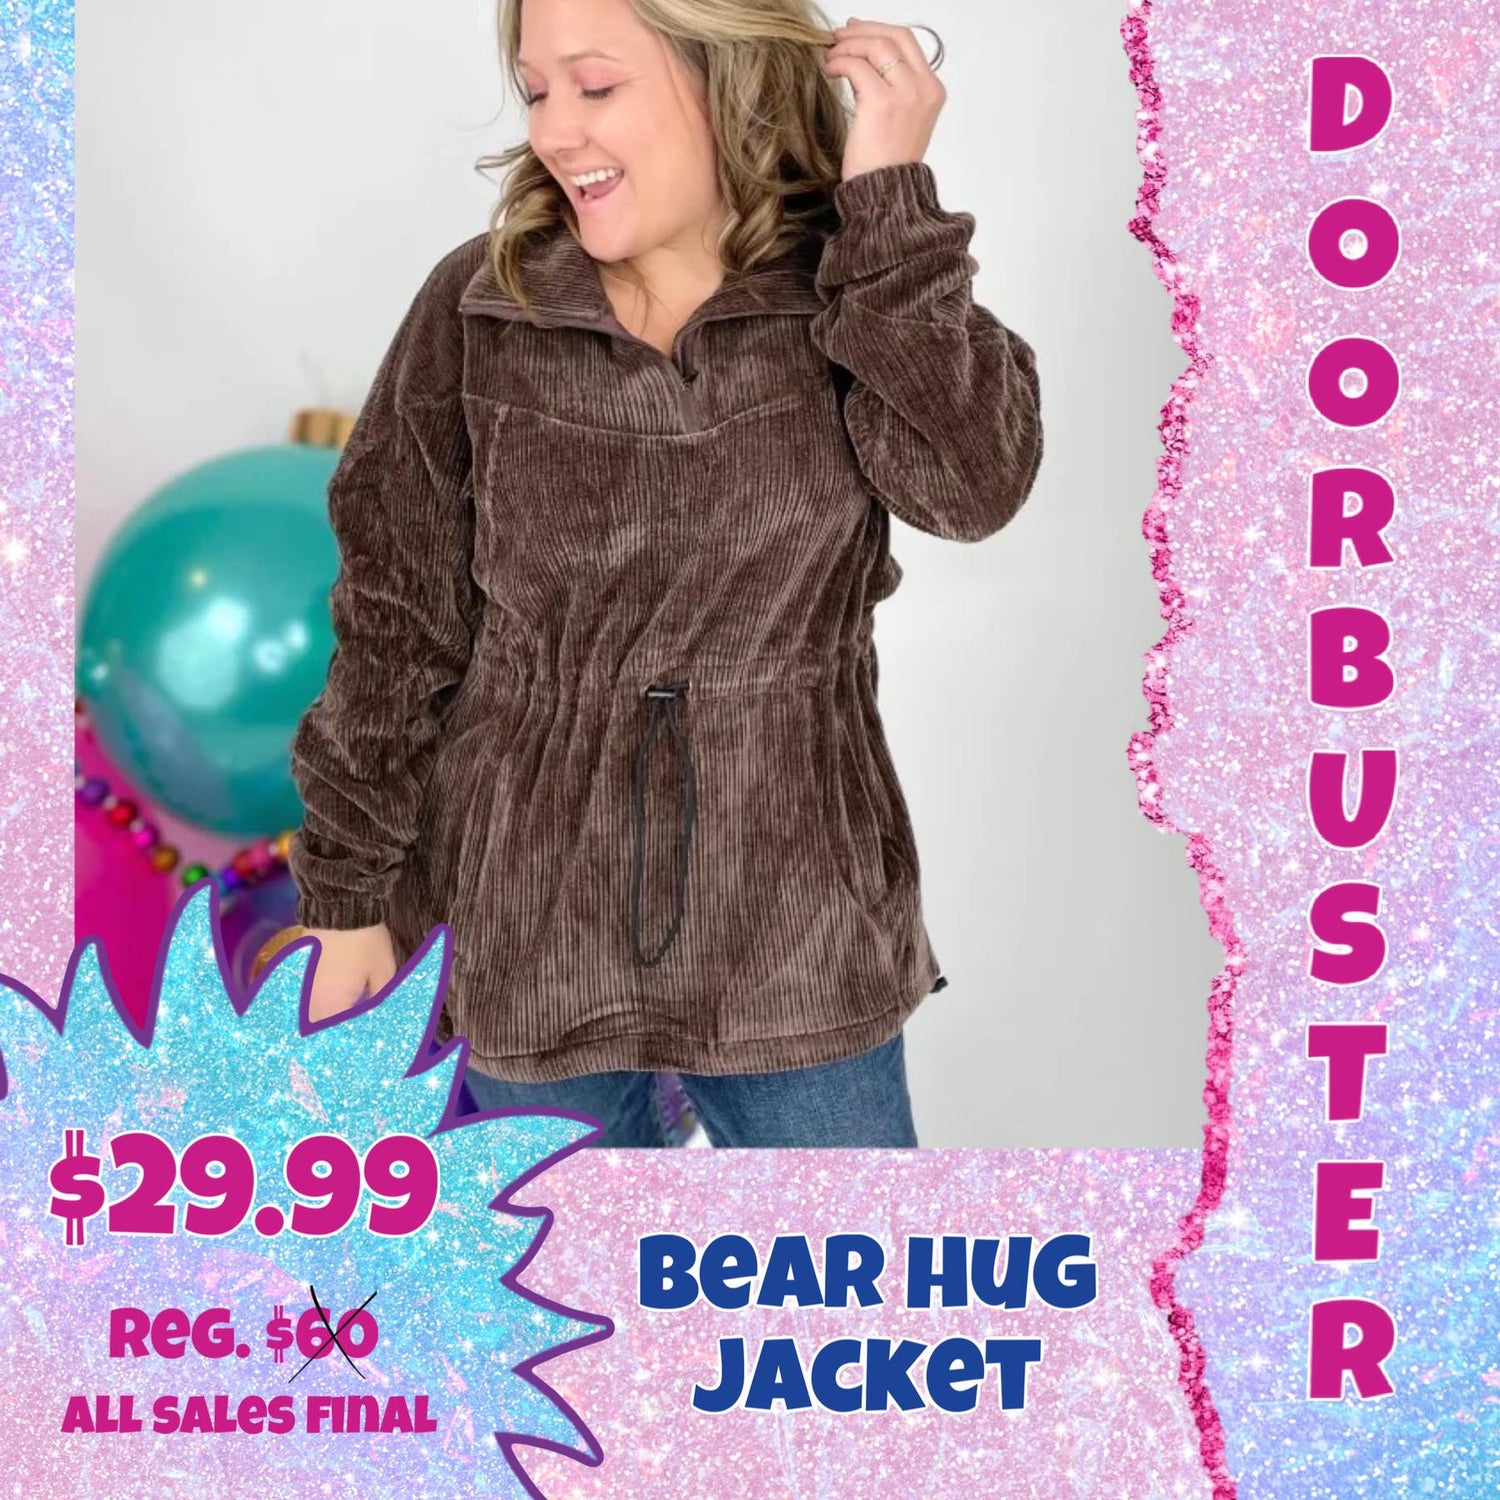 PW DOORBUSTER!!! Bear Hug Jacket